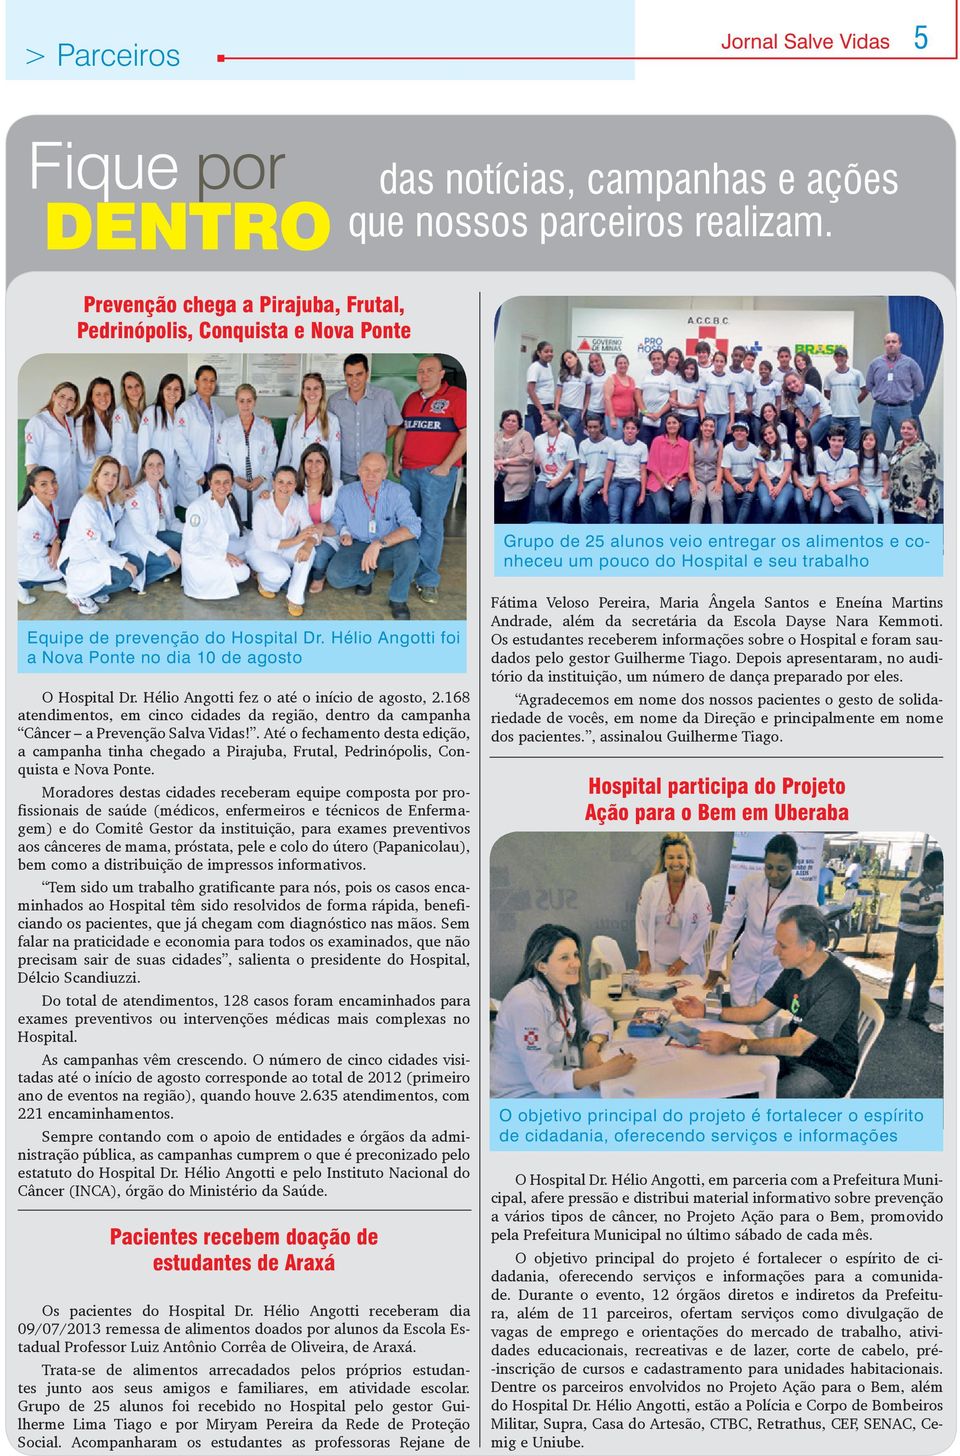 Dr. Hélio Angotti foi a Nova Ponte no dia 10 de agosto O Hospital Dr. Hélio Angotti fez o até o início de agosto, 2.